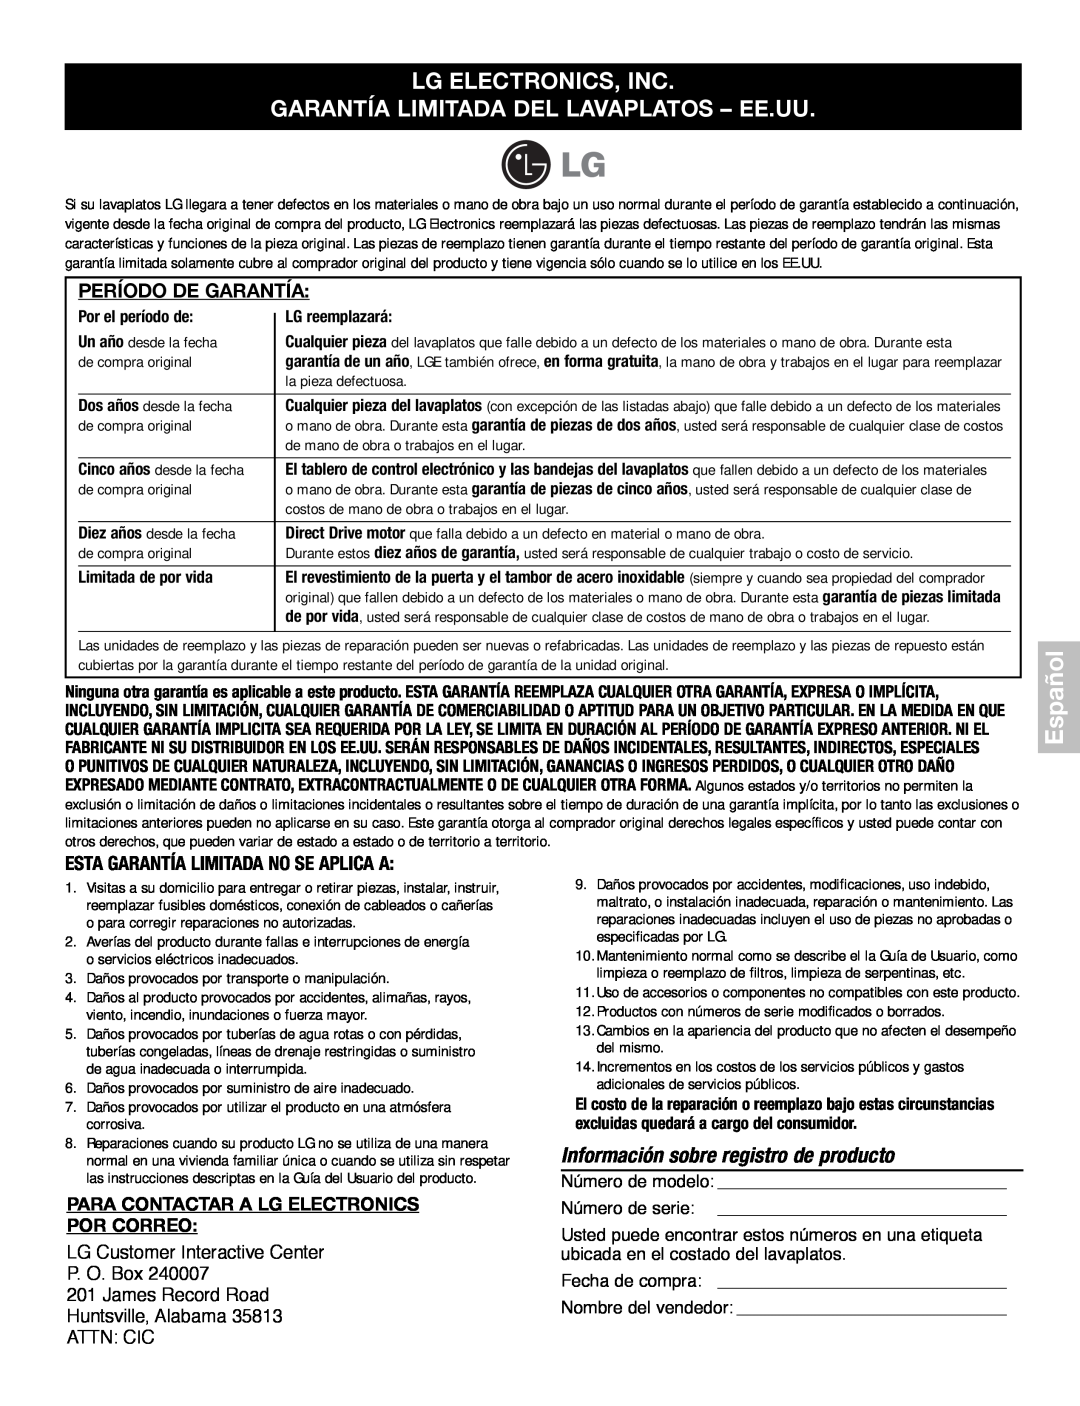 LG Electronics LDF7932ST Garantía Limitada Del Lavaplatos – Ee.Uu, Información sobre registro de producto, Español 